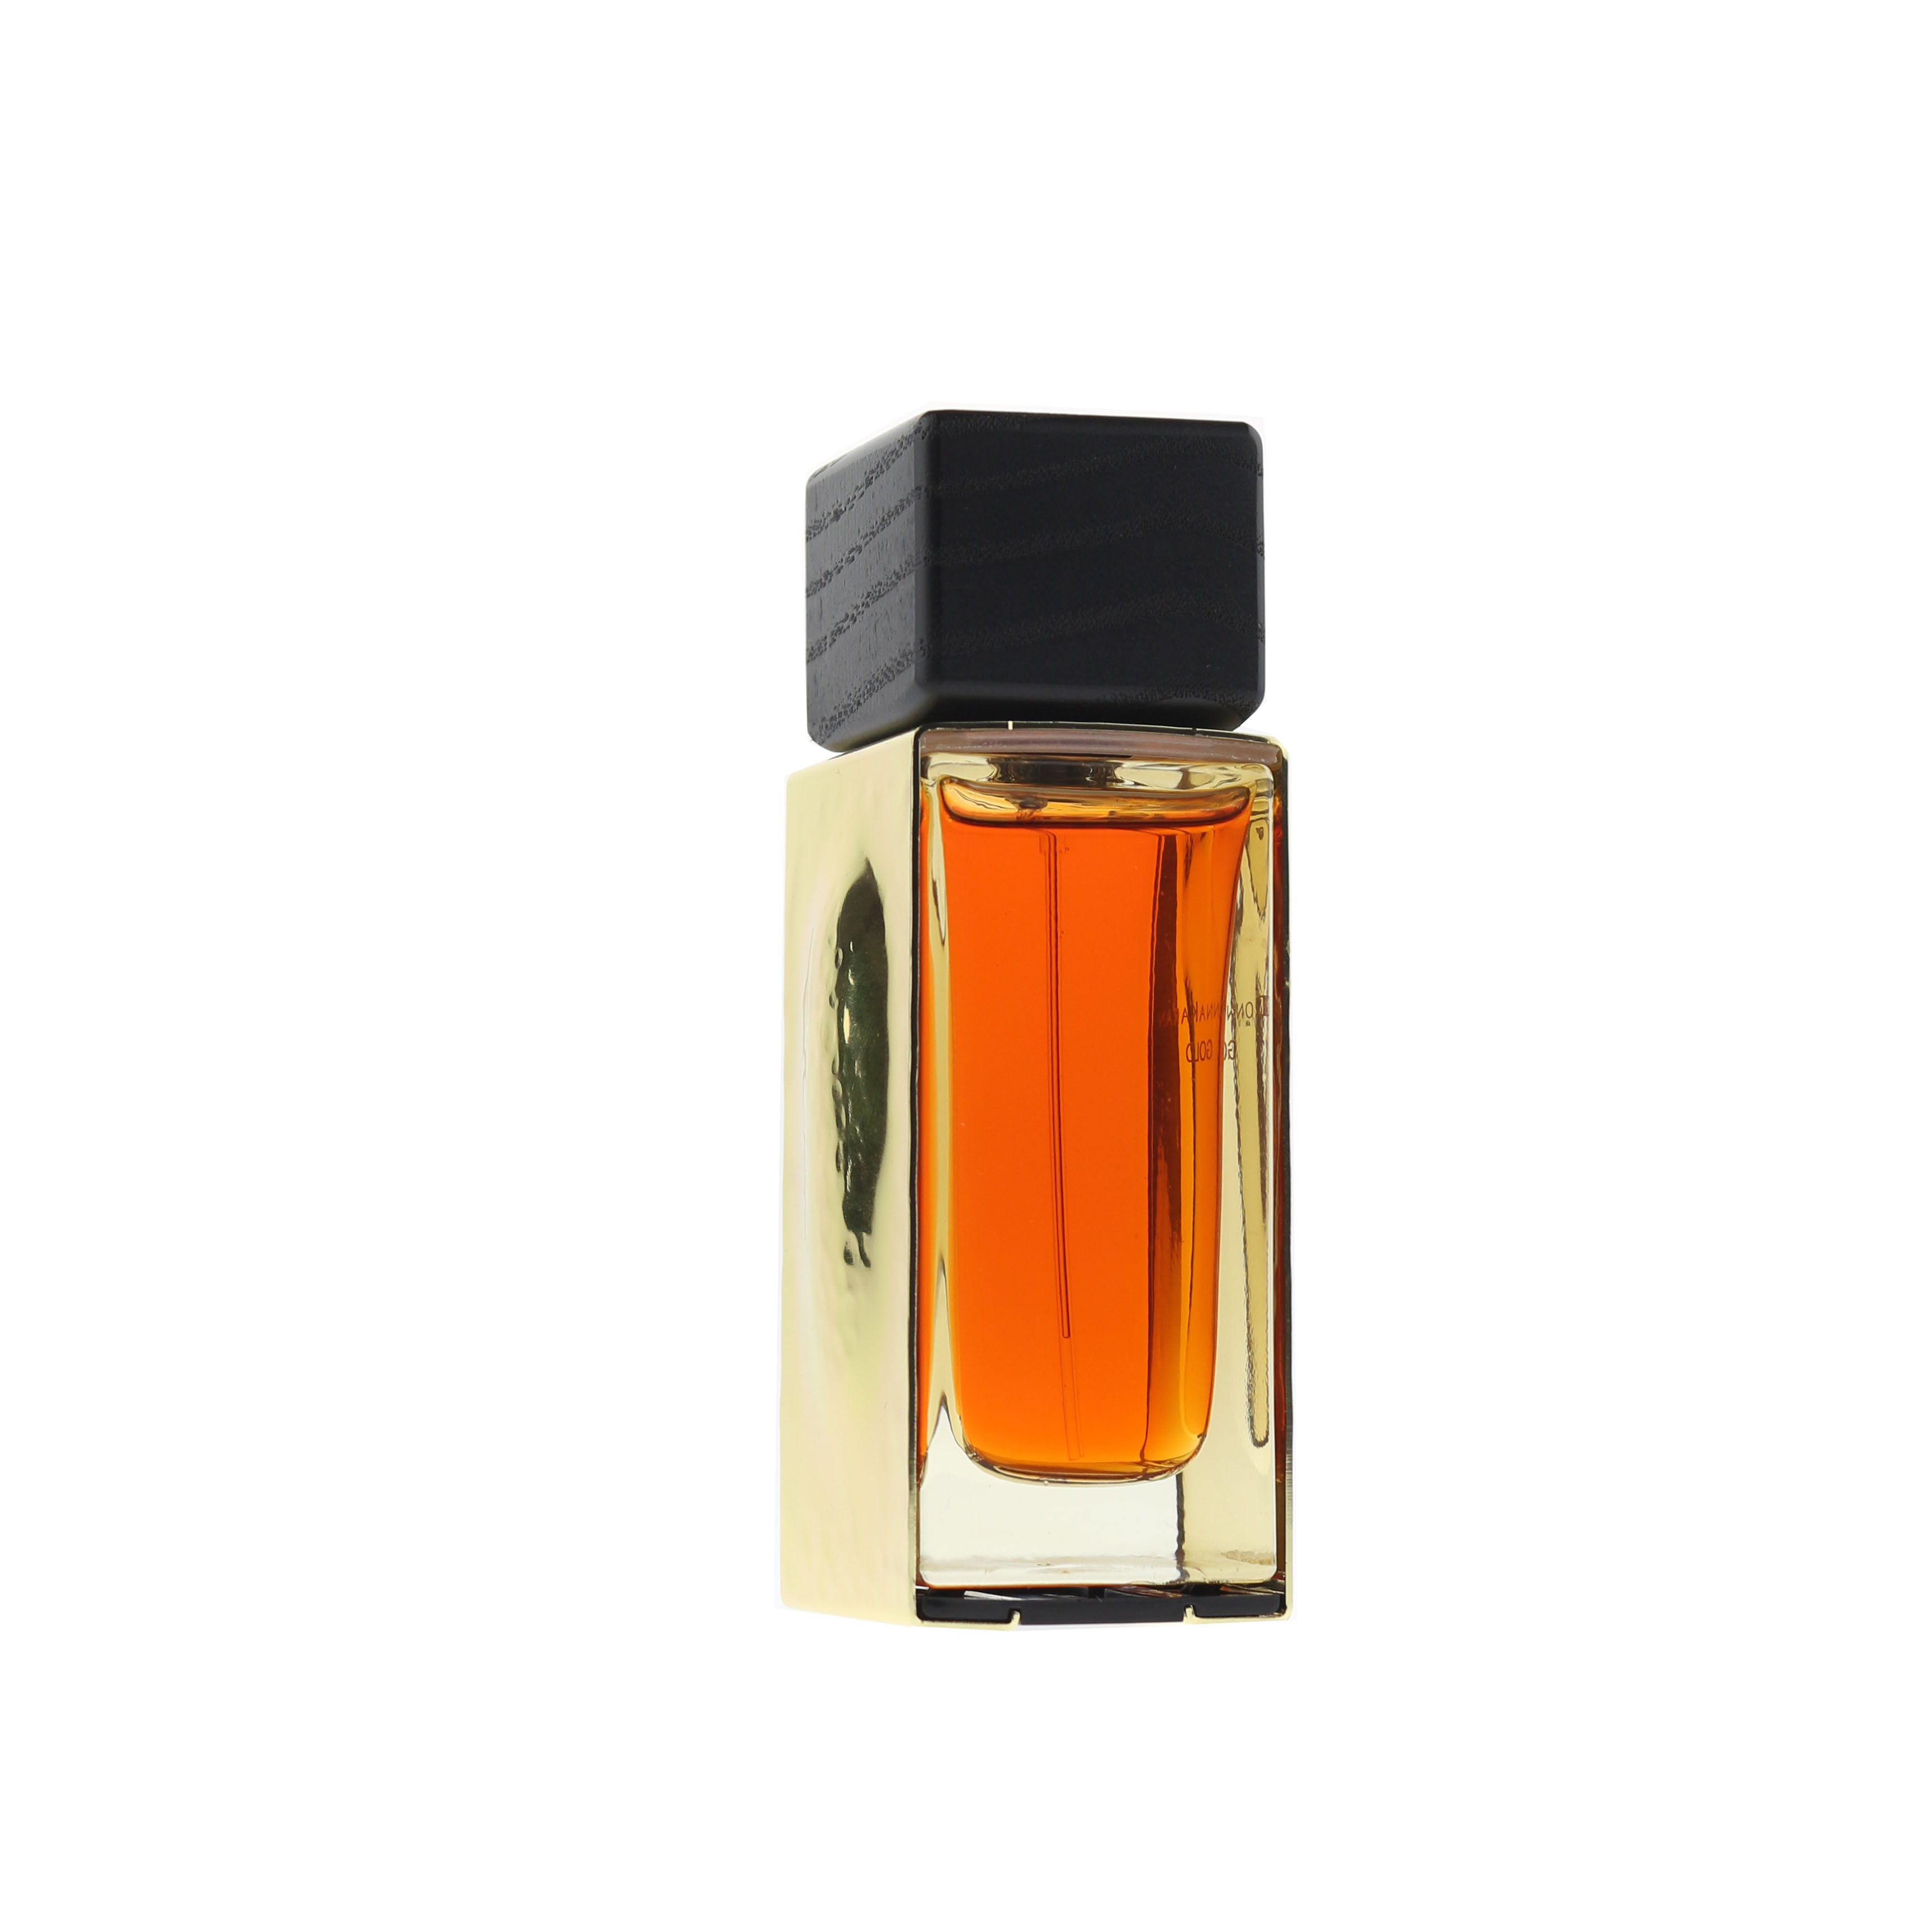 Donna Karan 'Gold' Eau De Parfum 1.7oz/50ml Unboxed 799493477832 | eBay